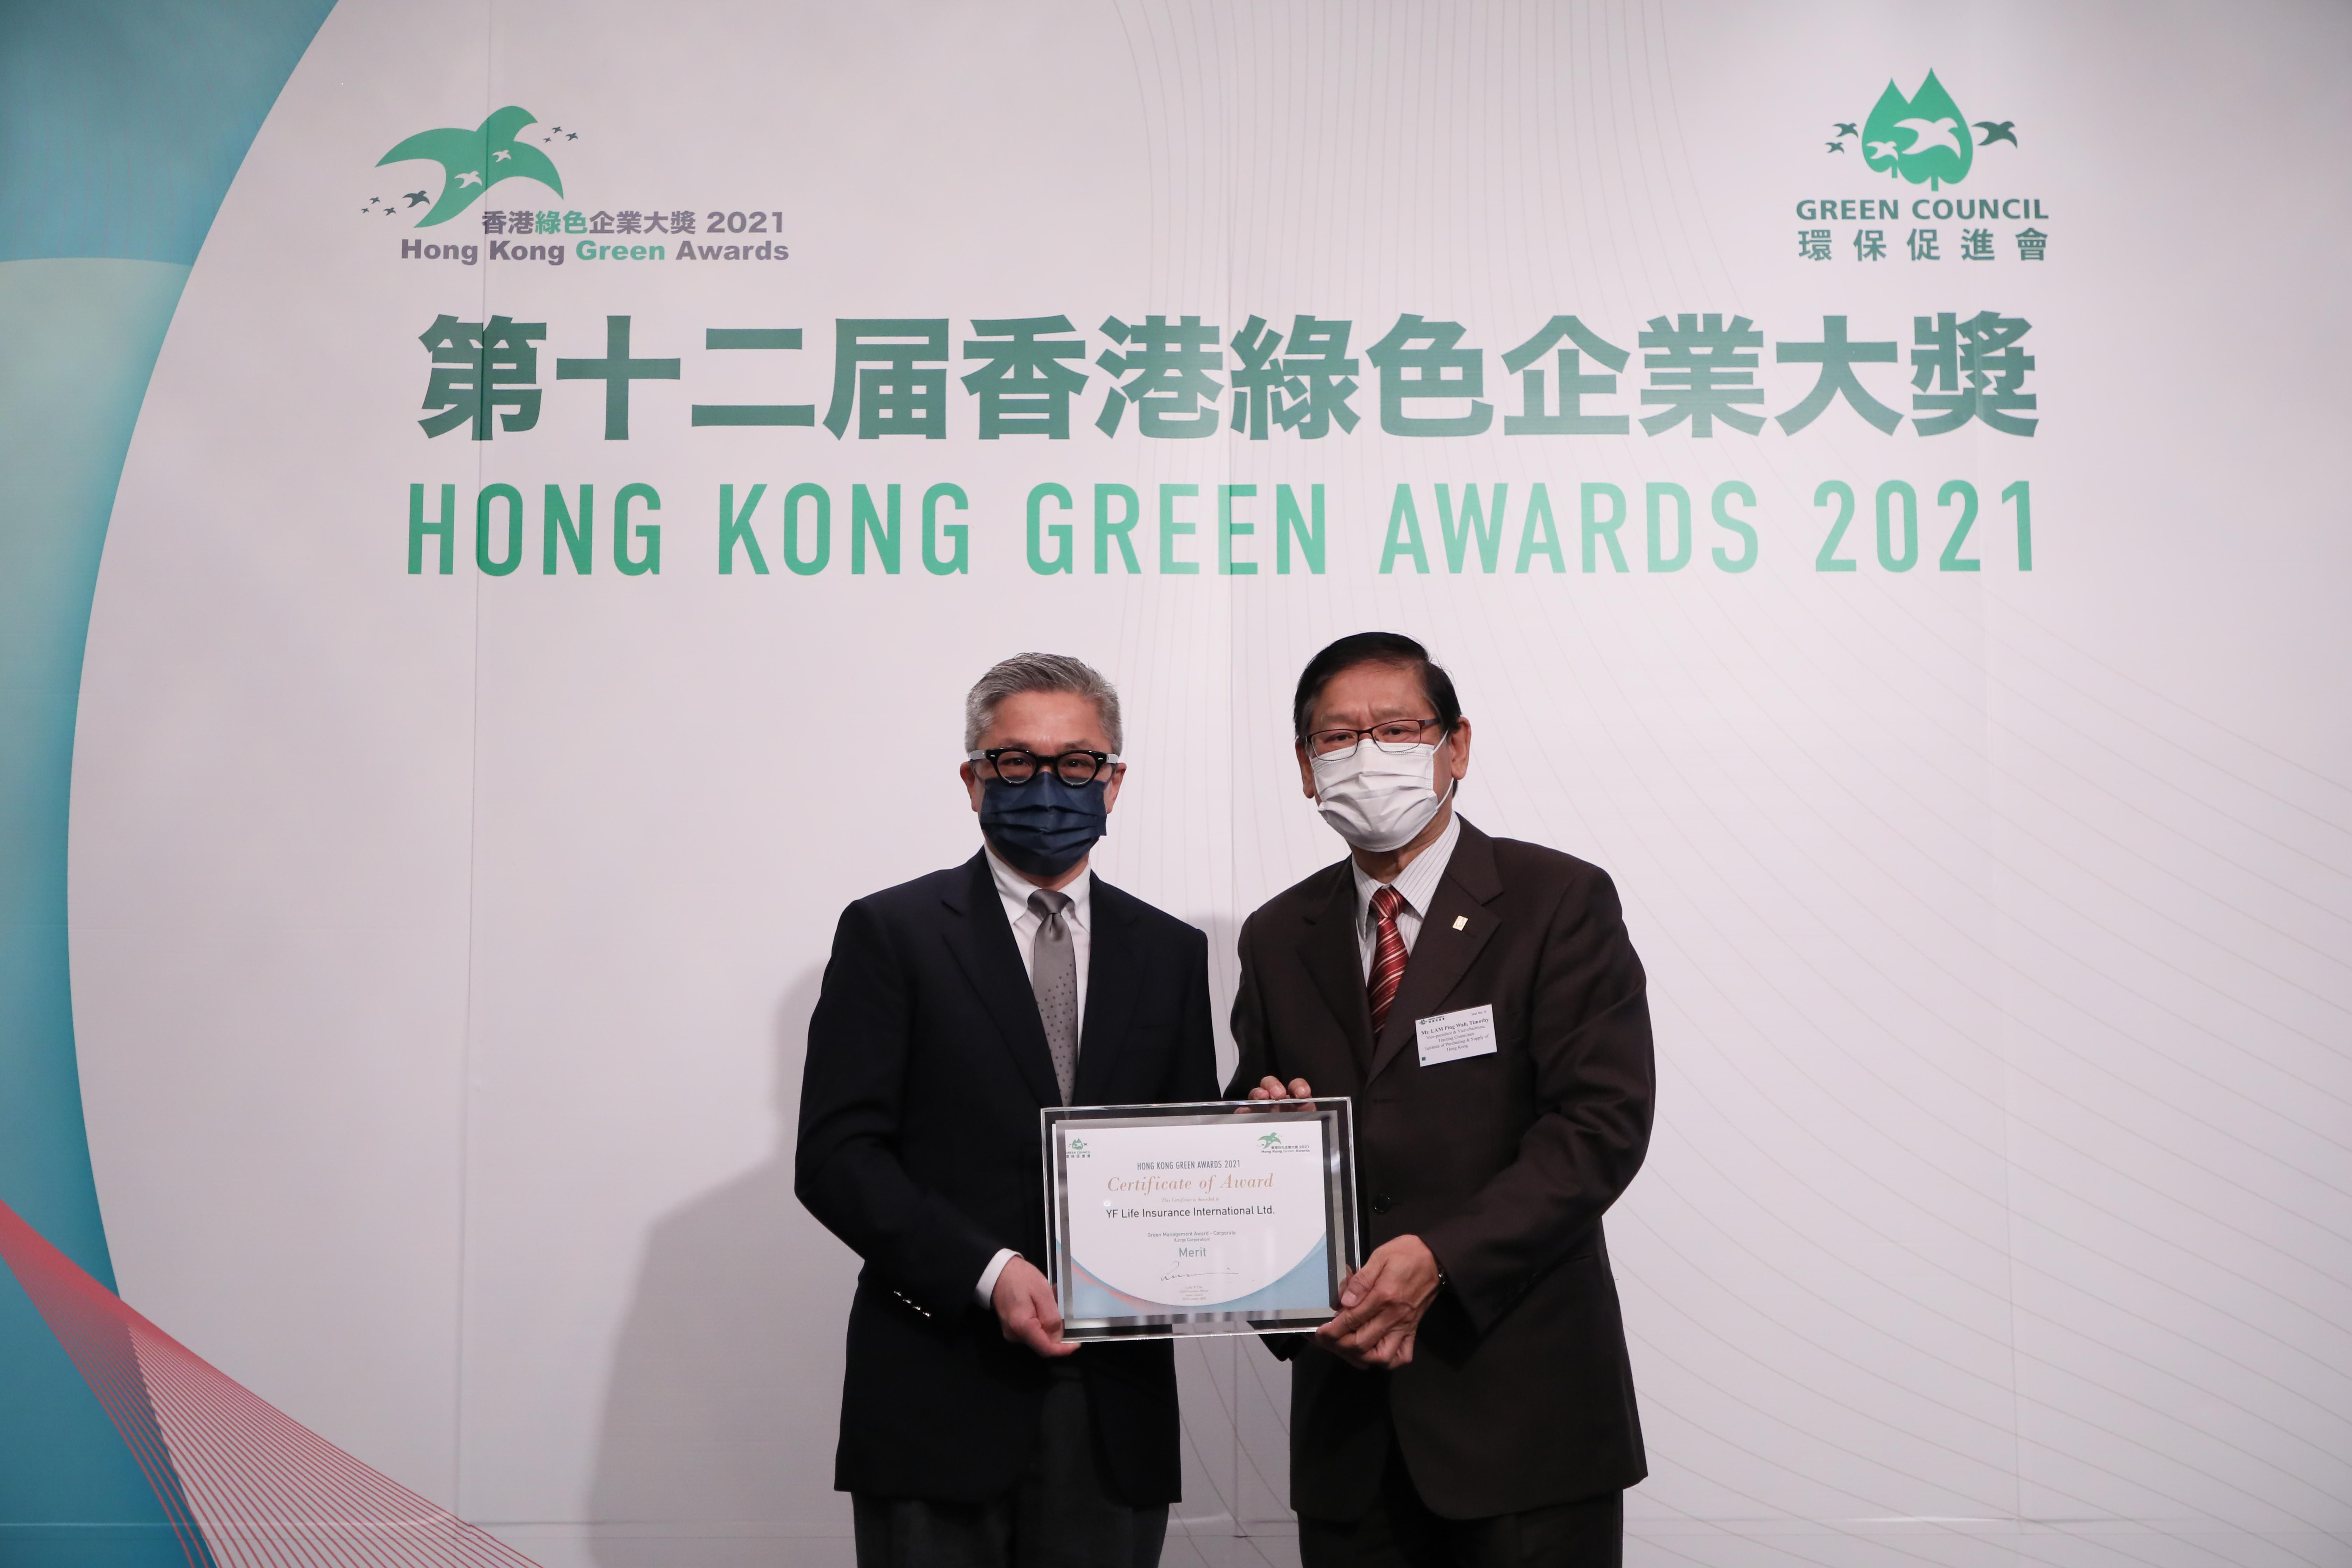 萬通保險創新營銷品牌部部門副主管葉偉傑先生（圖左）出席《環保促進會》「第十二屆香港綠色企業大獎」頒獎典禮，接受「優越環保管理獎」（企業）的優異獎。